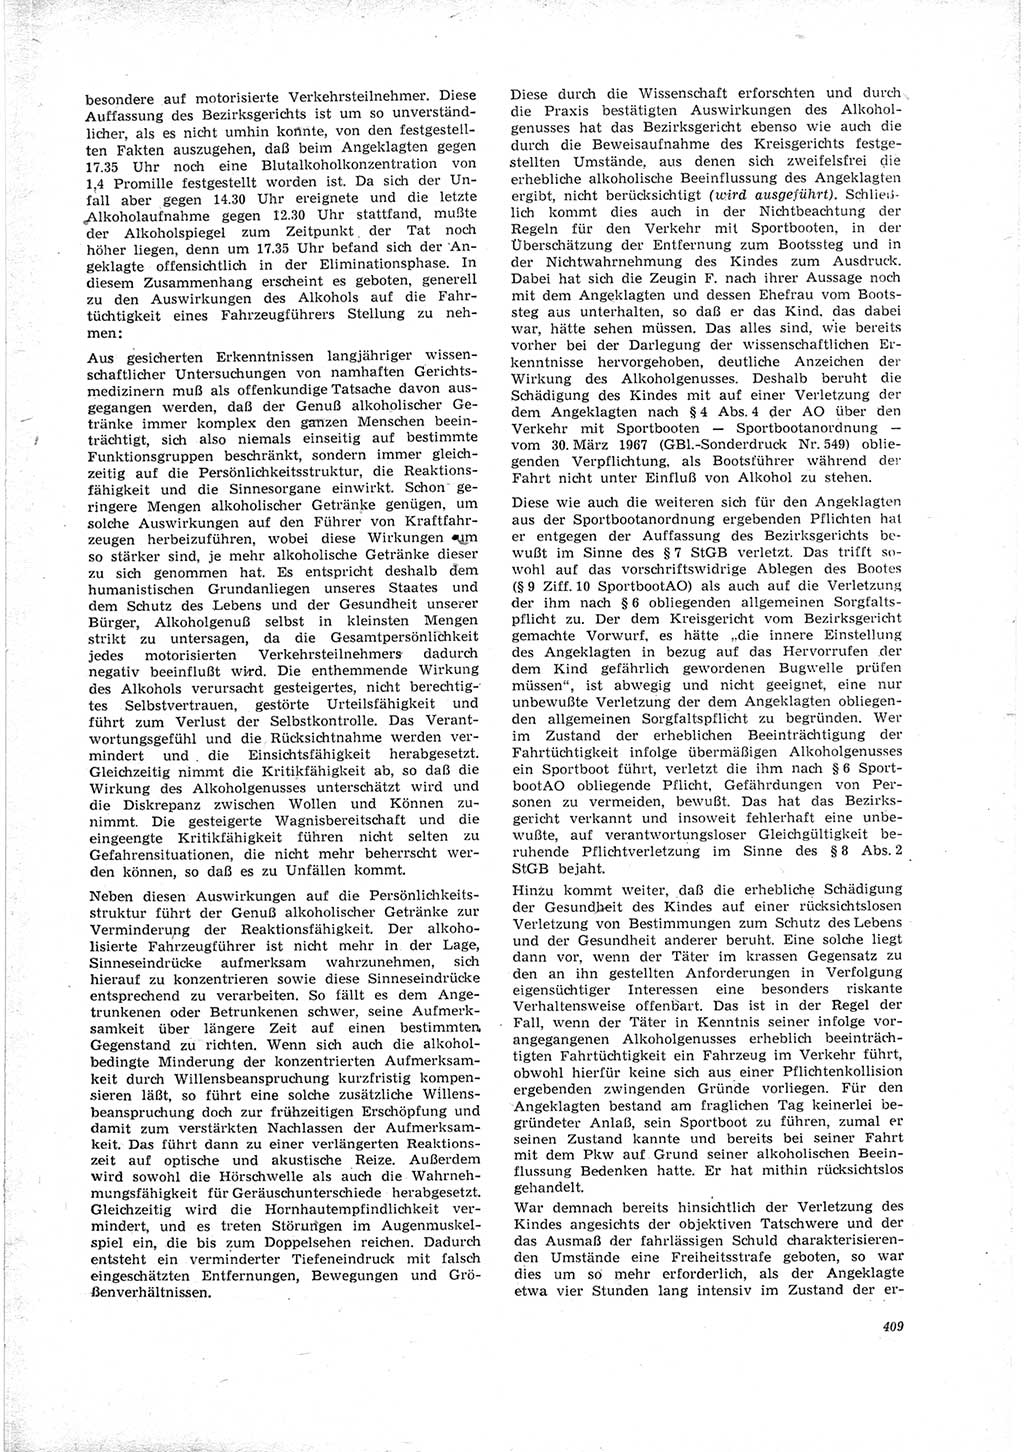 Neue Justiz (NJ), Zeitschrift für Recht und Rechtswissenschaft [Deutsche Demokratische Republik (DDR)], 23. Jahrgang 1969, Seite 409 (NJ DDR 1969, S. 409)